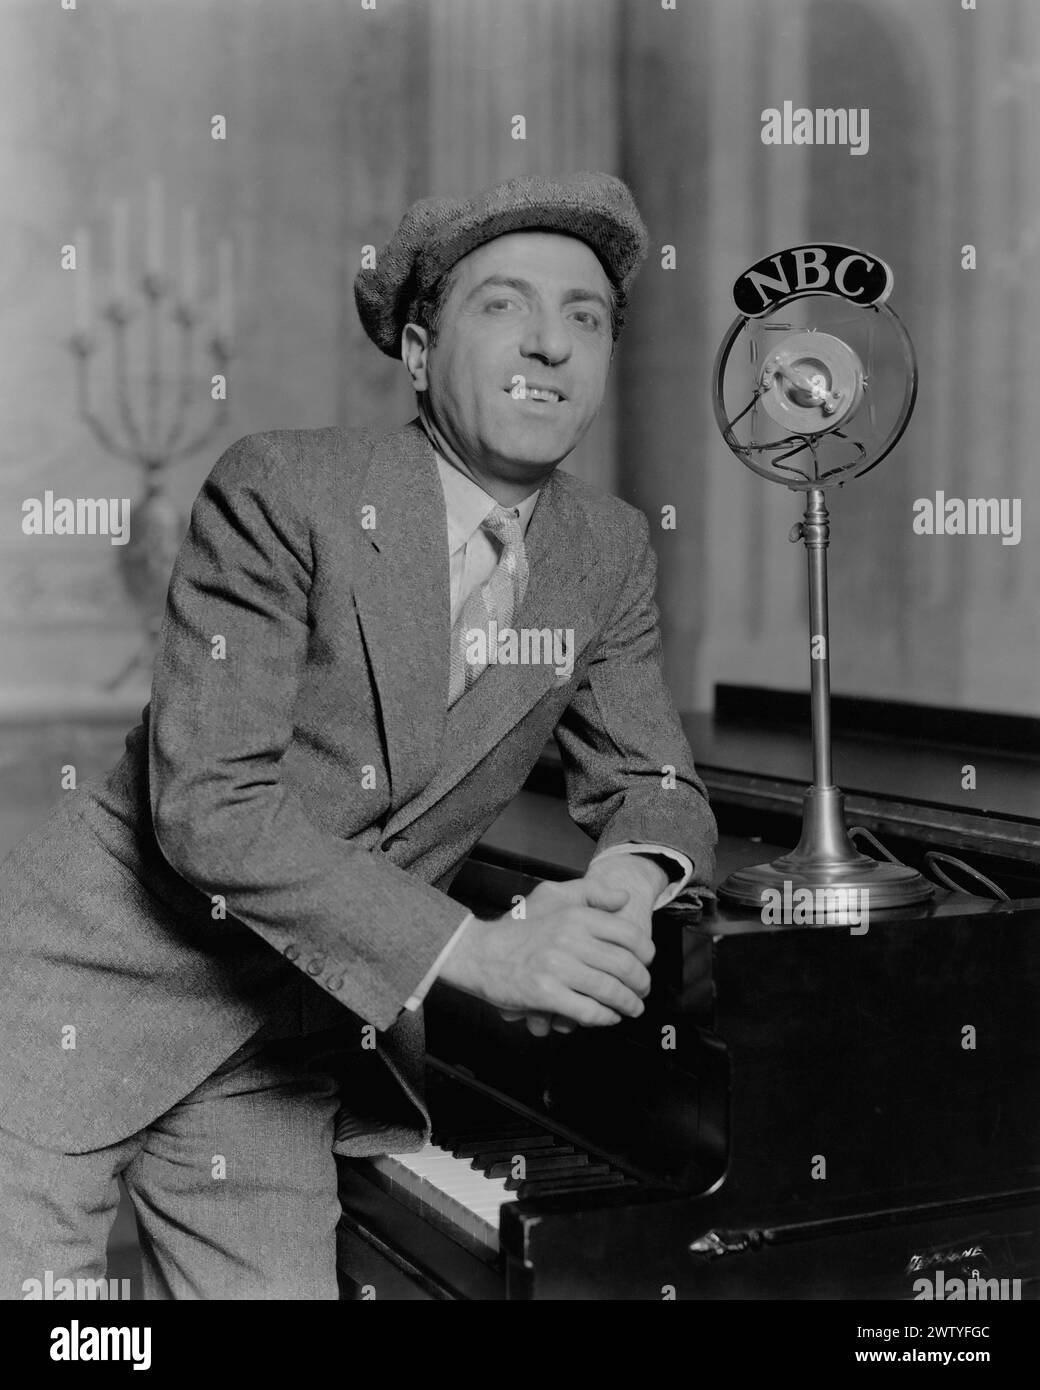 Der Musiker Ted Lewis in einem Business-Anzug und einem Hut auf einem Klavier mit einem NBC-Mikrofon neben ihm Stockfoto